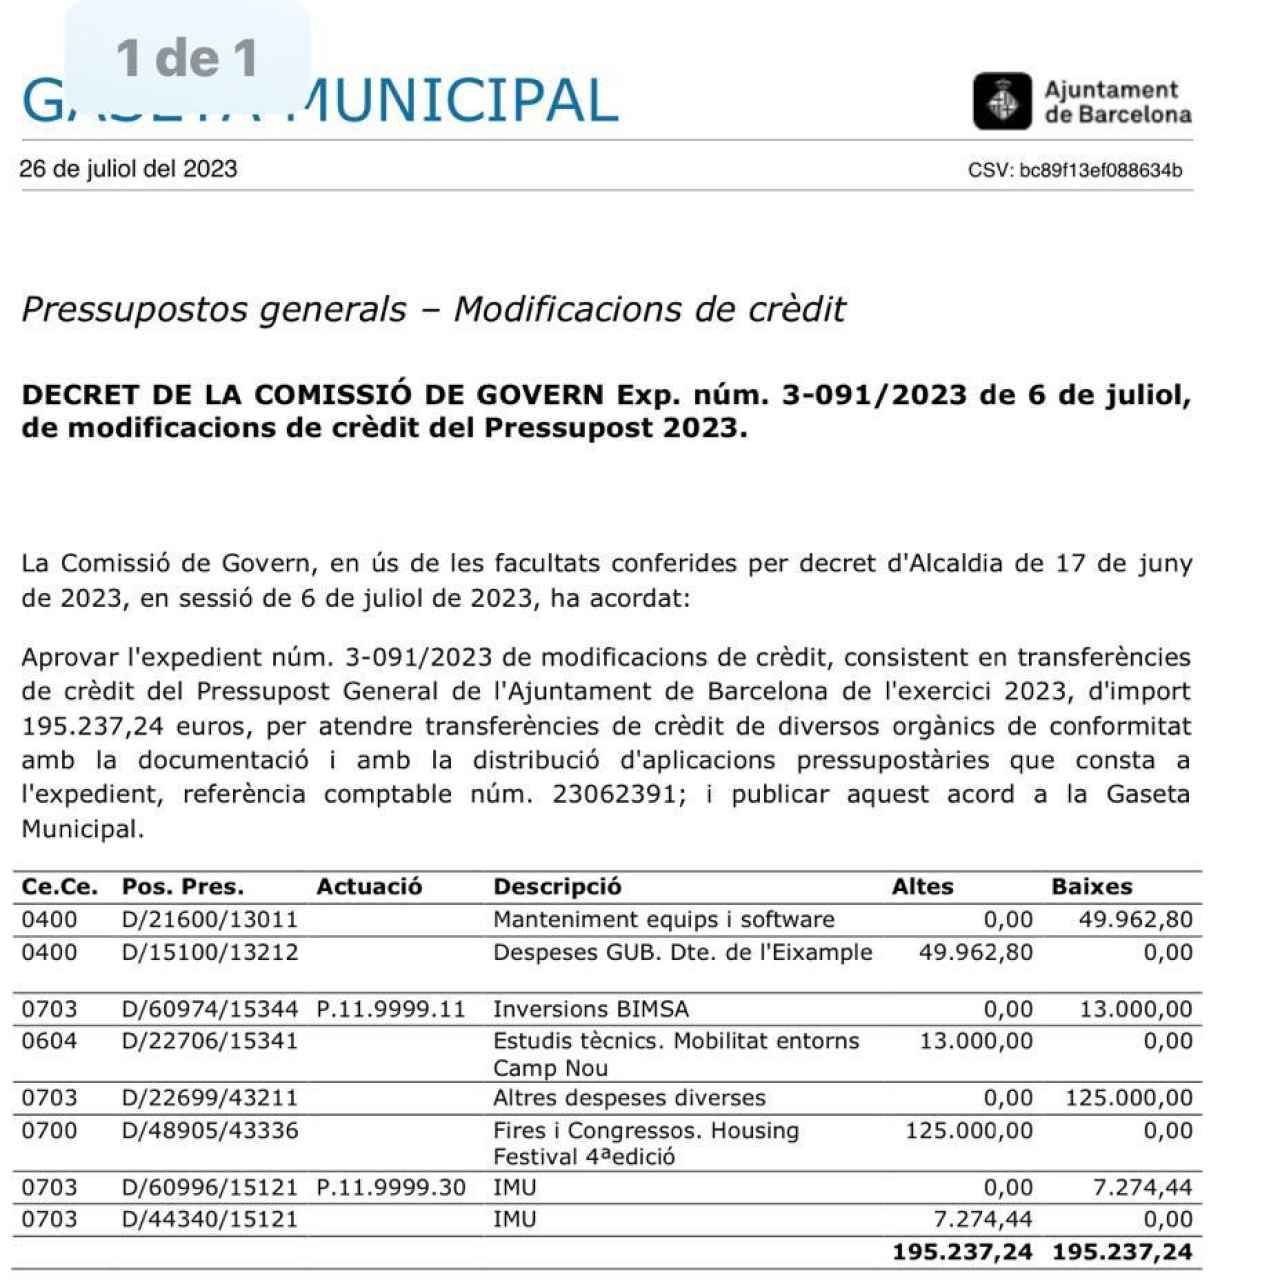 Informe sobre el presupuesto destinado a los estudios técnicos del Camp Nou